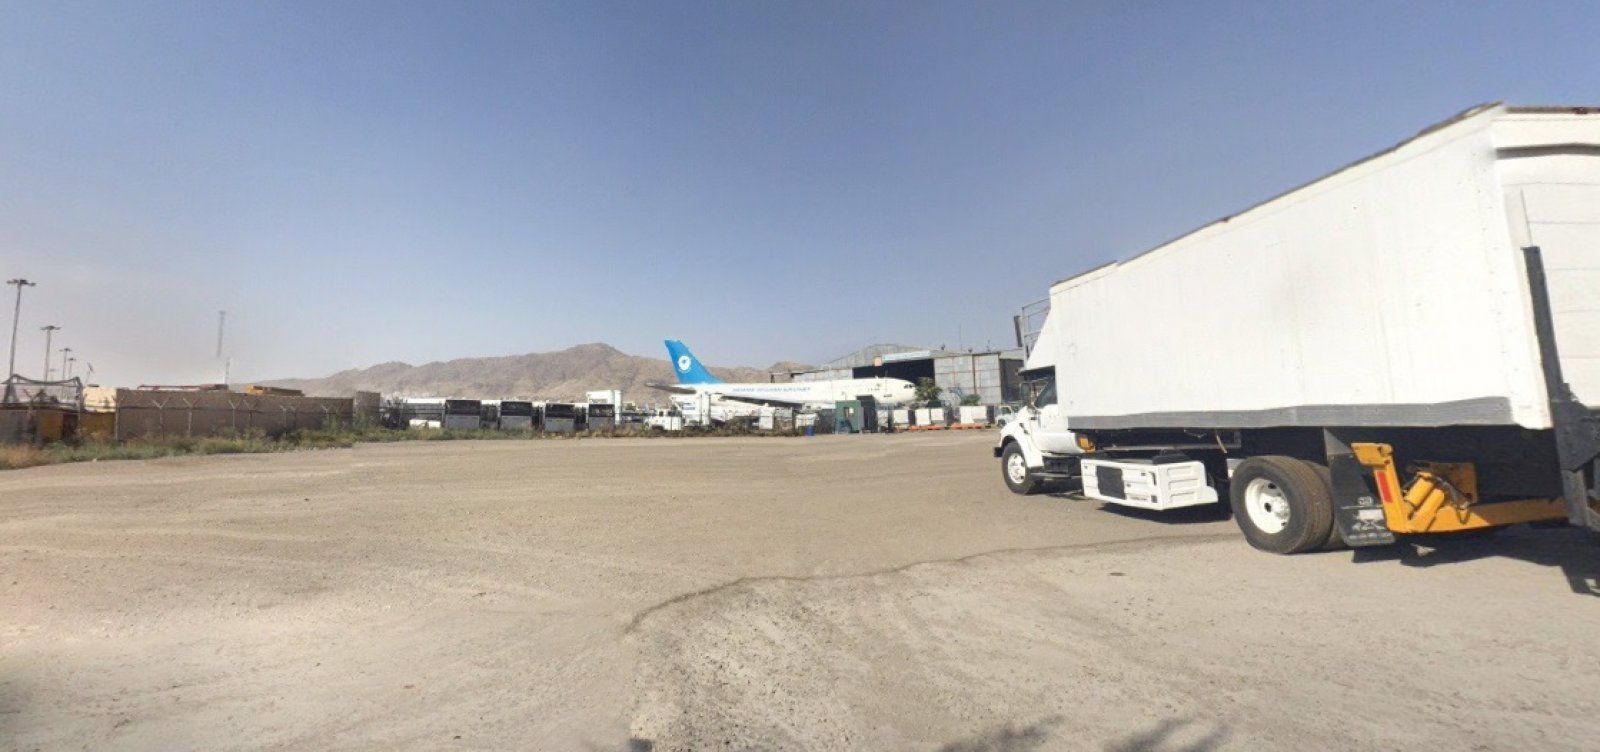 Homem-bomba mata pelo menos 10 pessoas em entrada de aeroporto no Afeganistão 